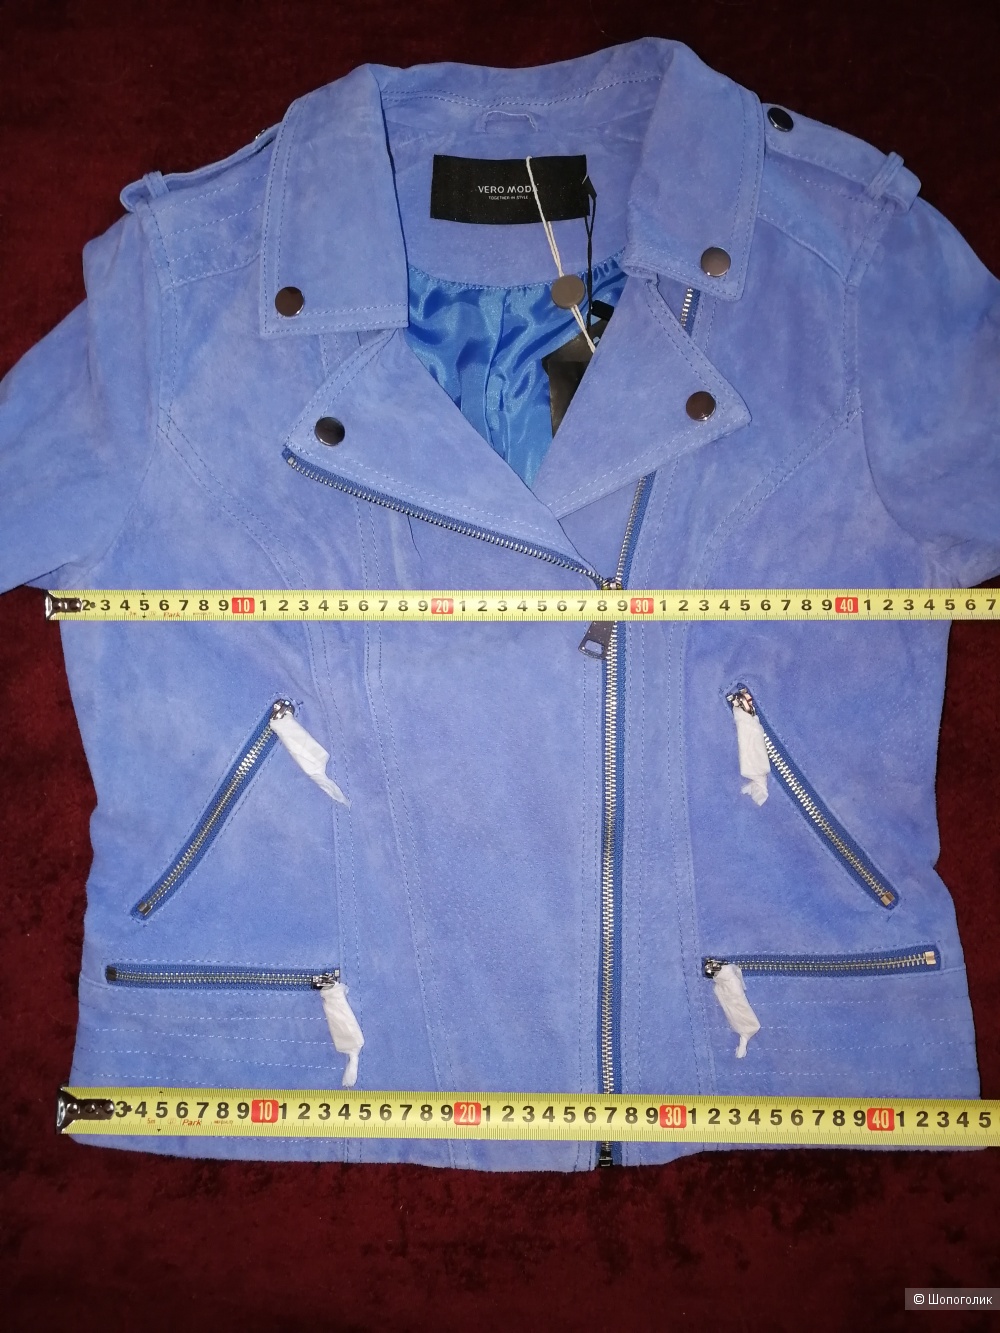 Замшевая куртка Vero Moda, новая, 44-46 (маркировка L) размер